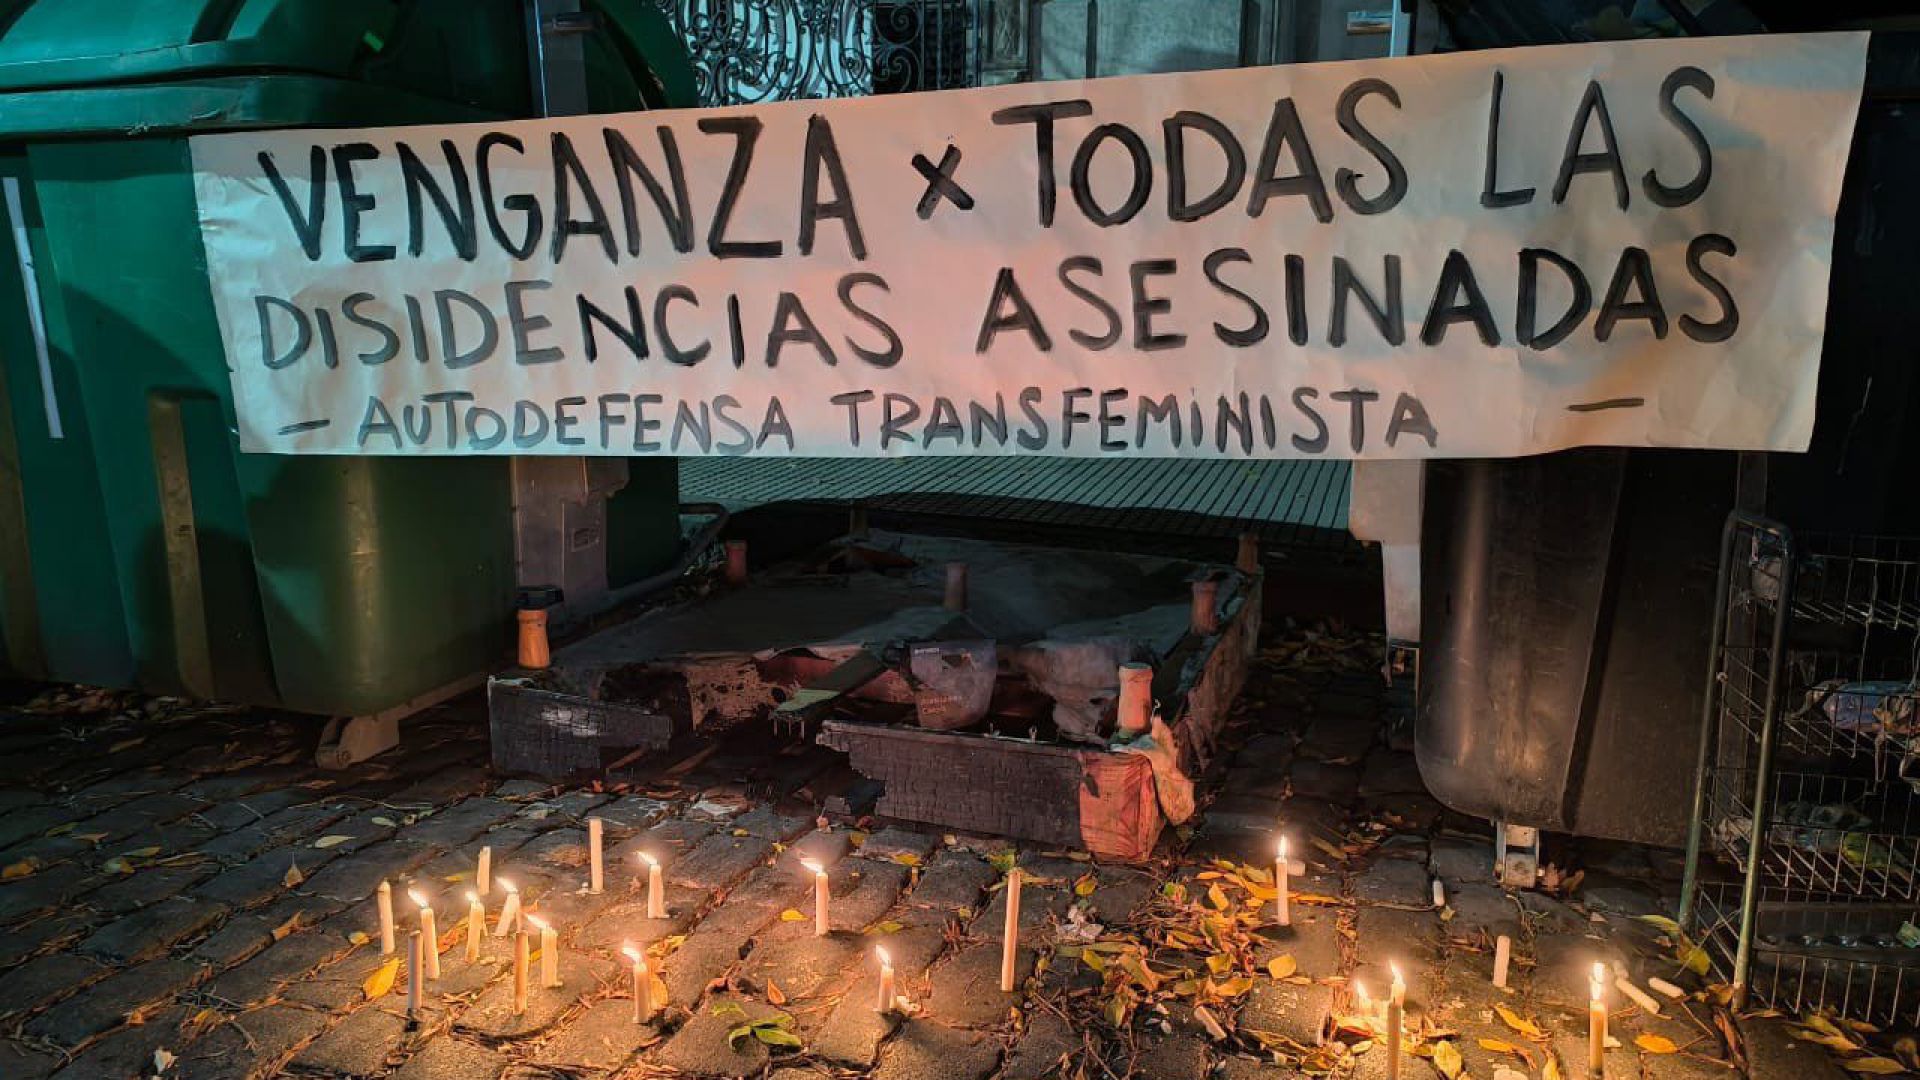 Repudiamos el aberrante acto de lesbo-odio en Barracas